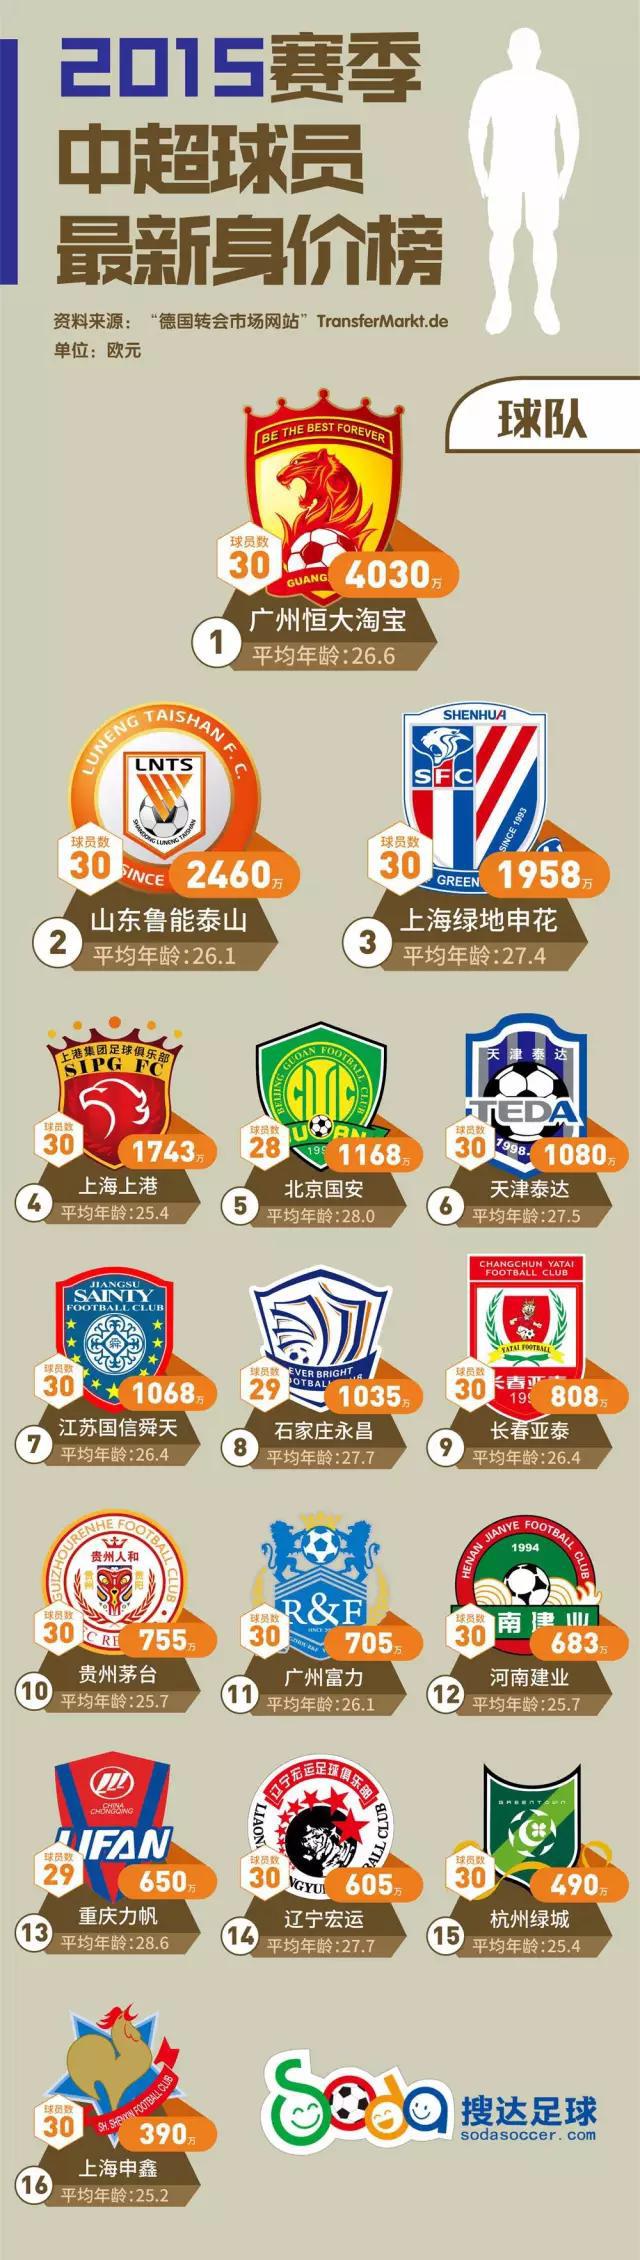 2015年中超球队身价排行榜2015 2015赛季中超球员最新身价榜(3)